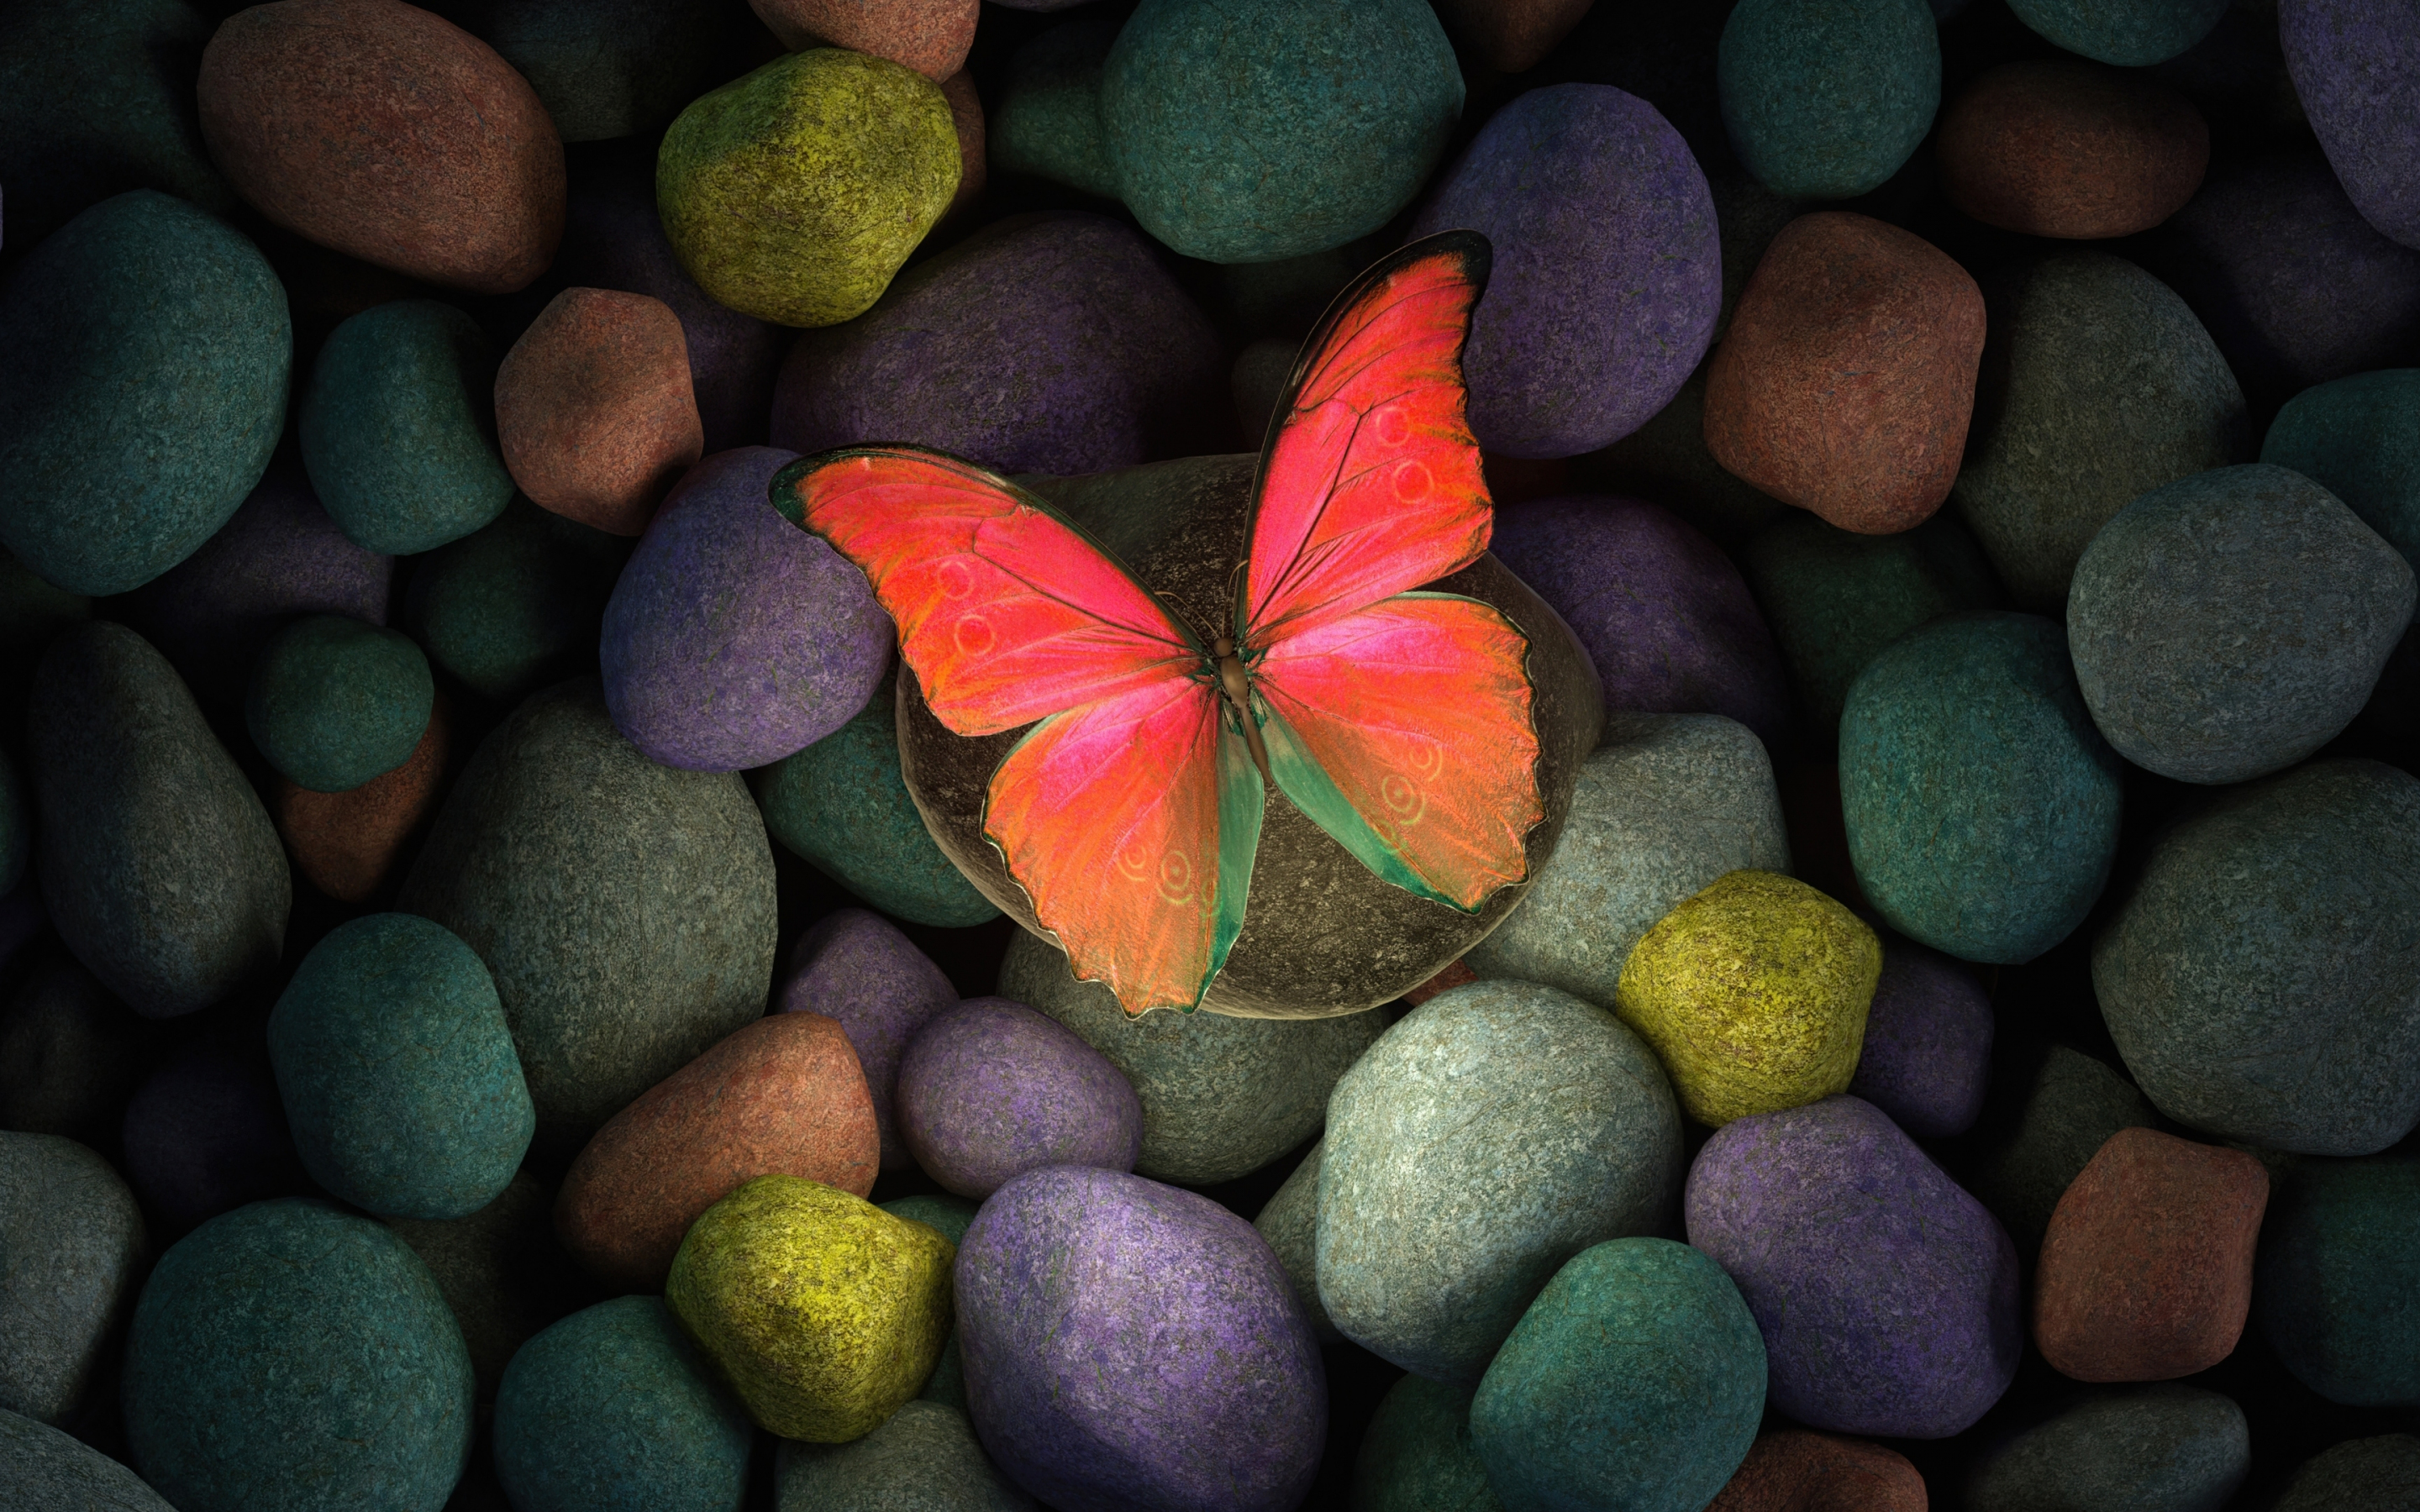 Butterfly on rocks, colorful rocks, art, 2880x1800 wallpaper